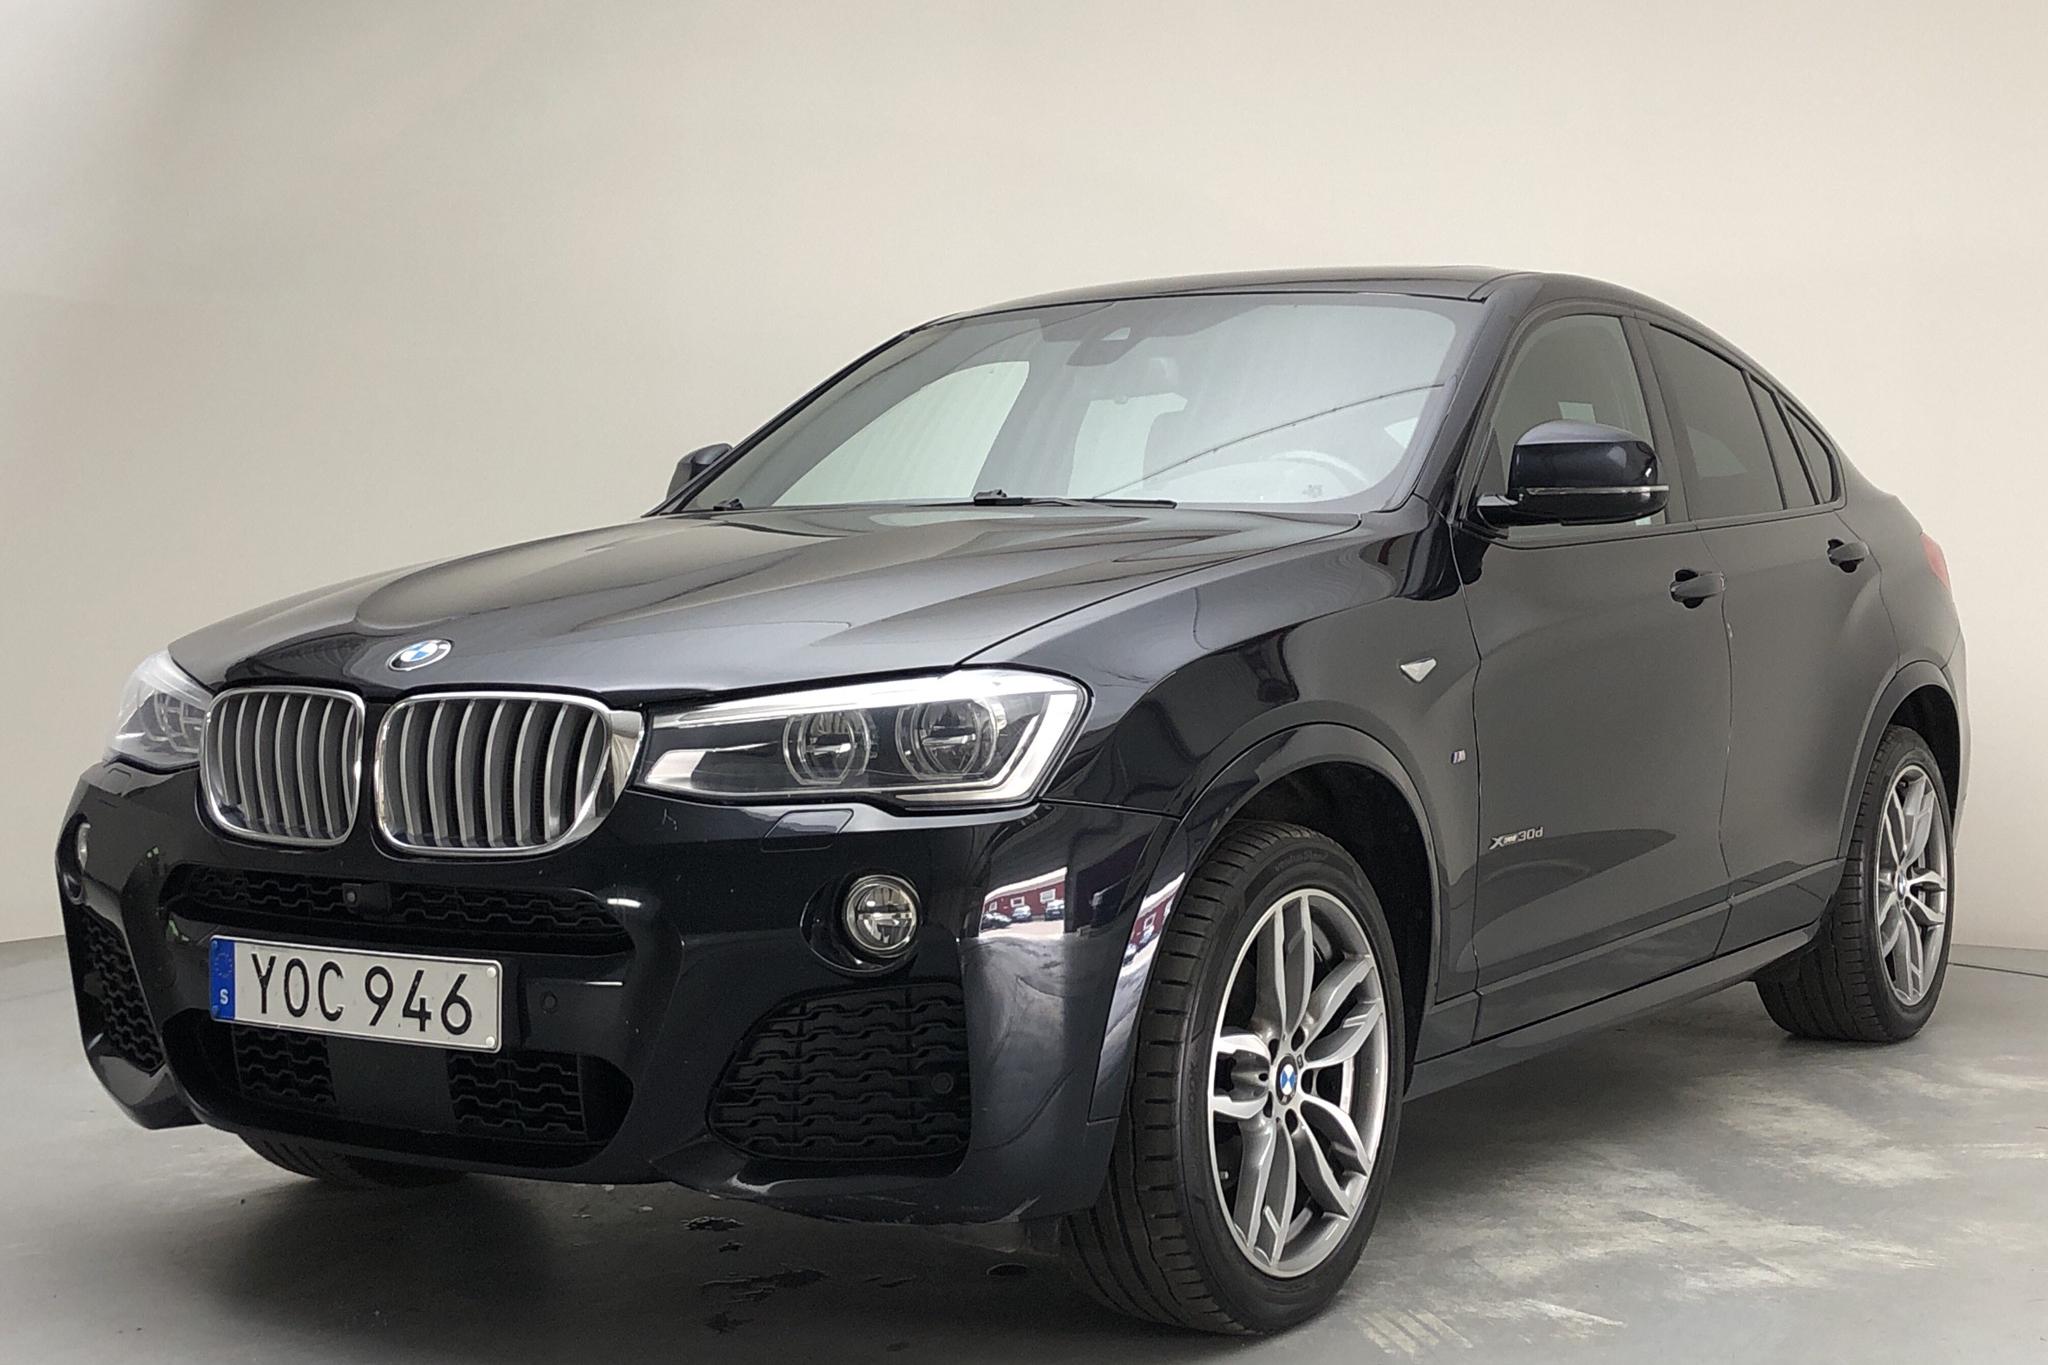 BMW X4 xDrive30d, F26 (258hk) - 127 290 km - Automatic - black - 2017